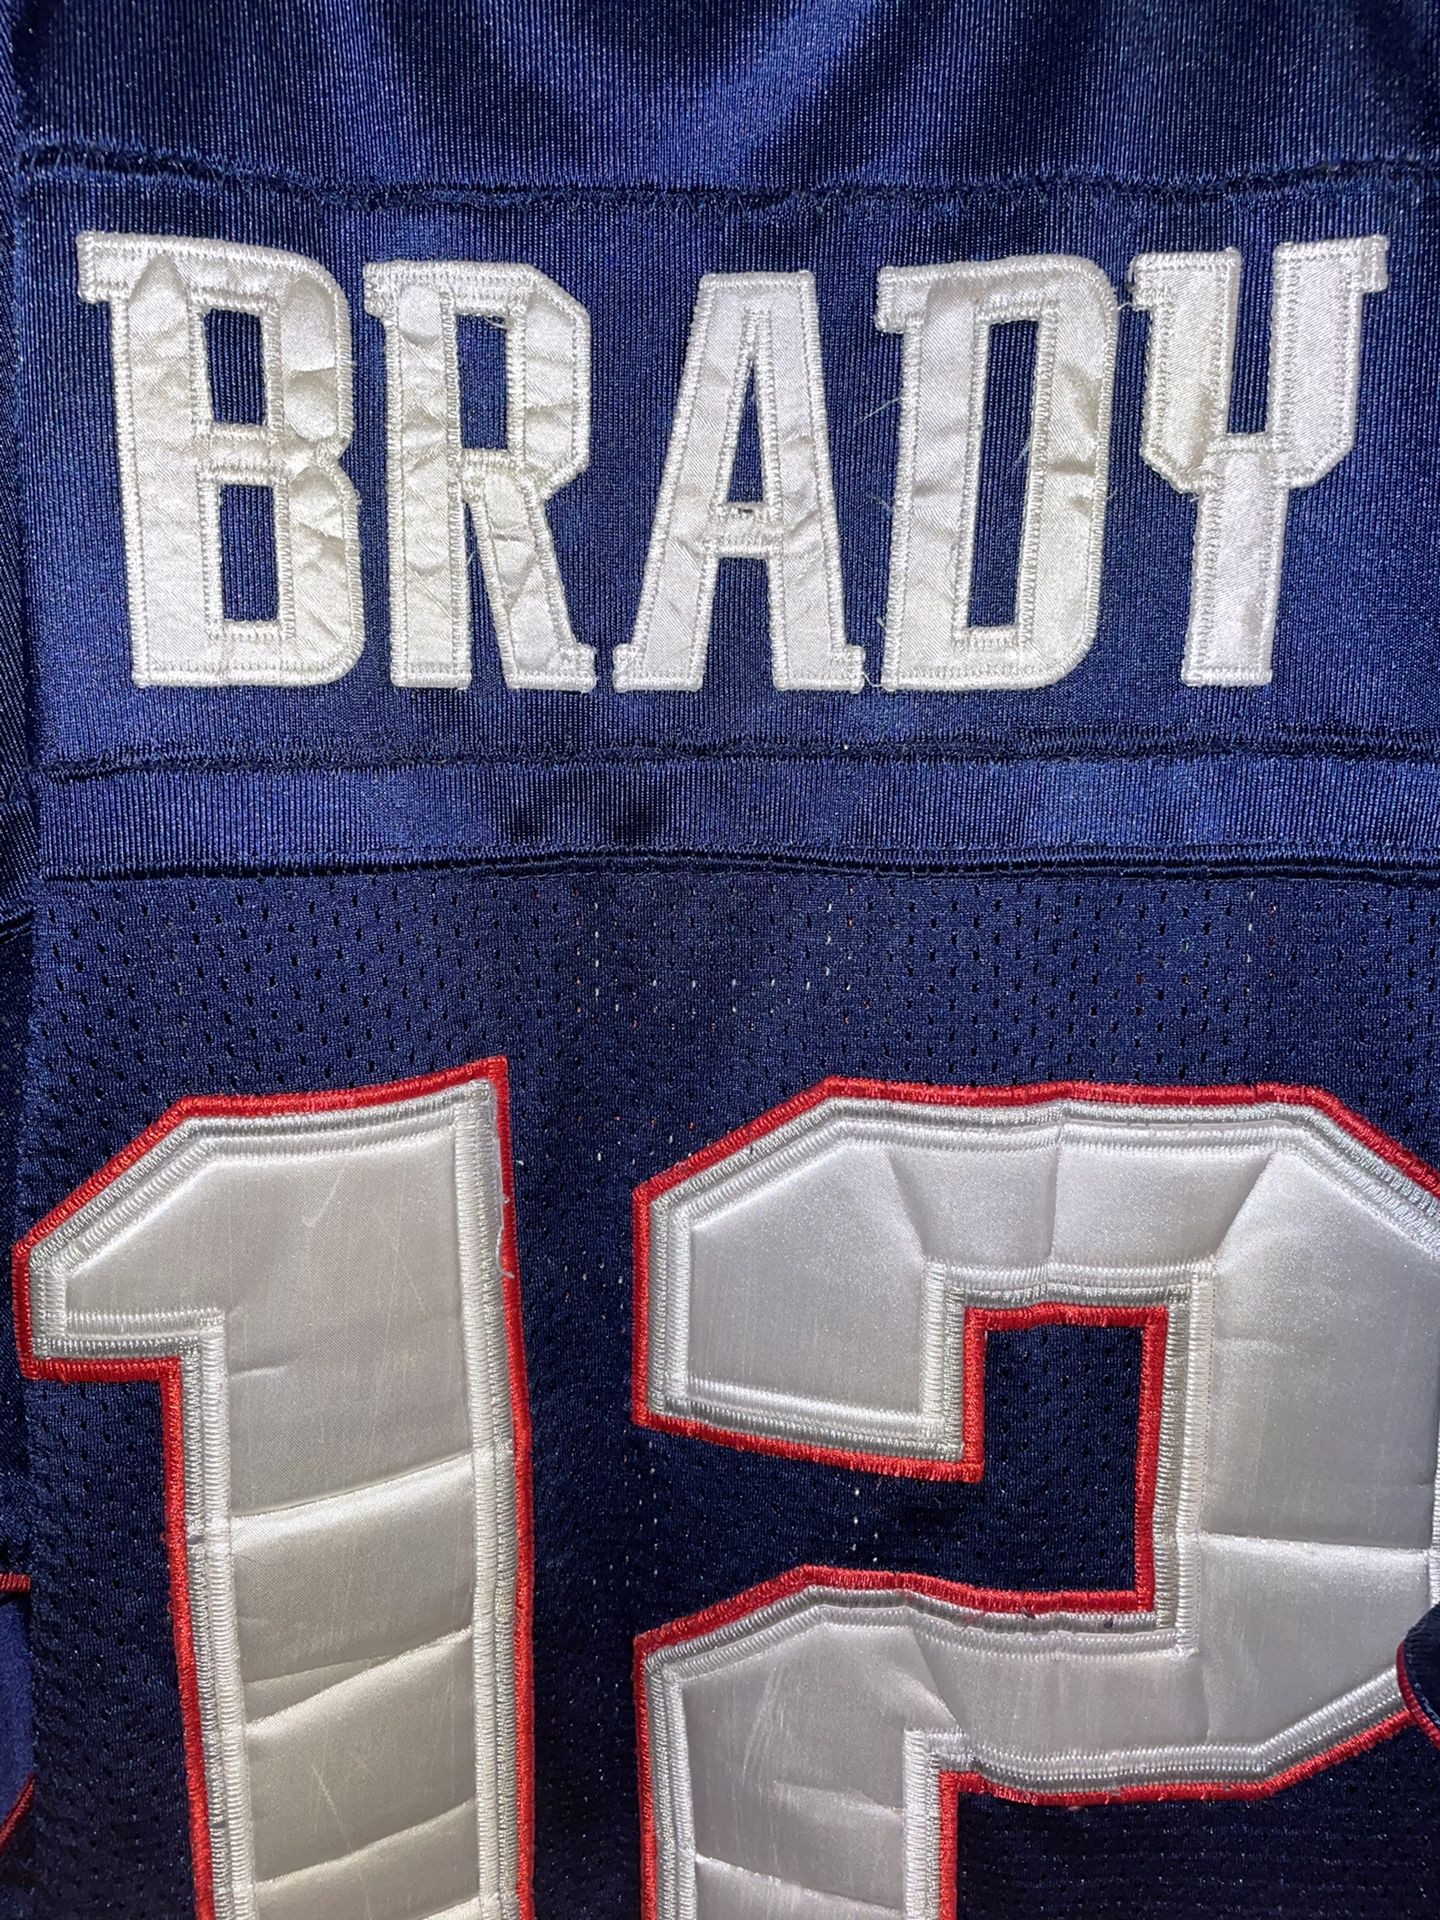 Authentic Tom Brady NFL Reebok Jersey